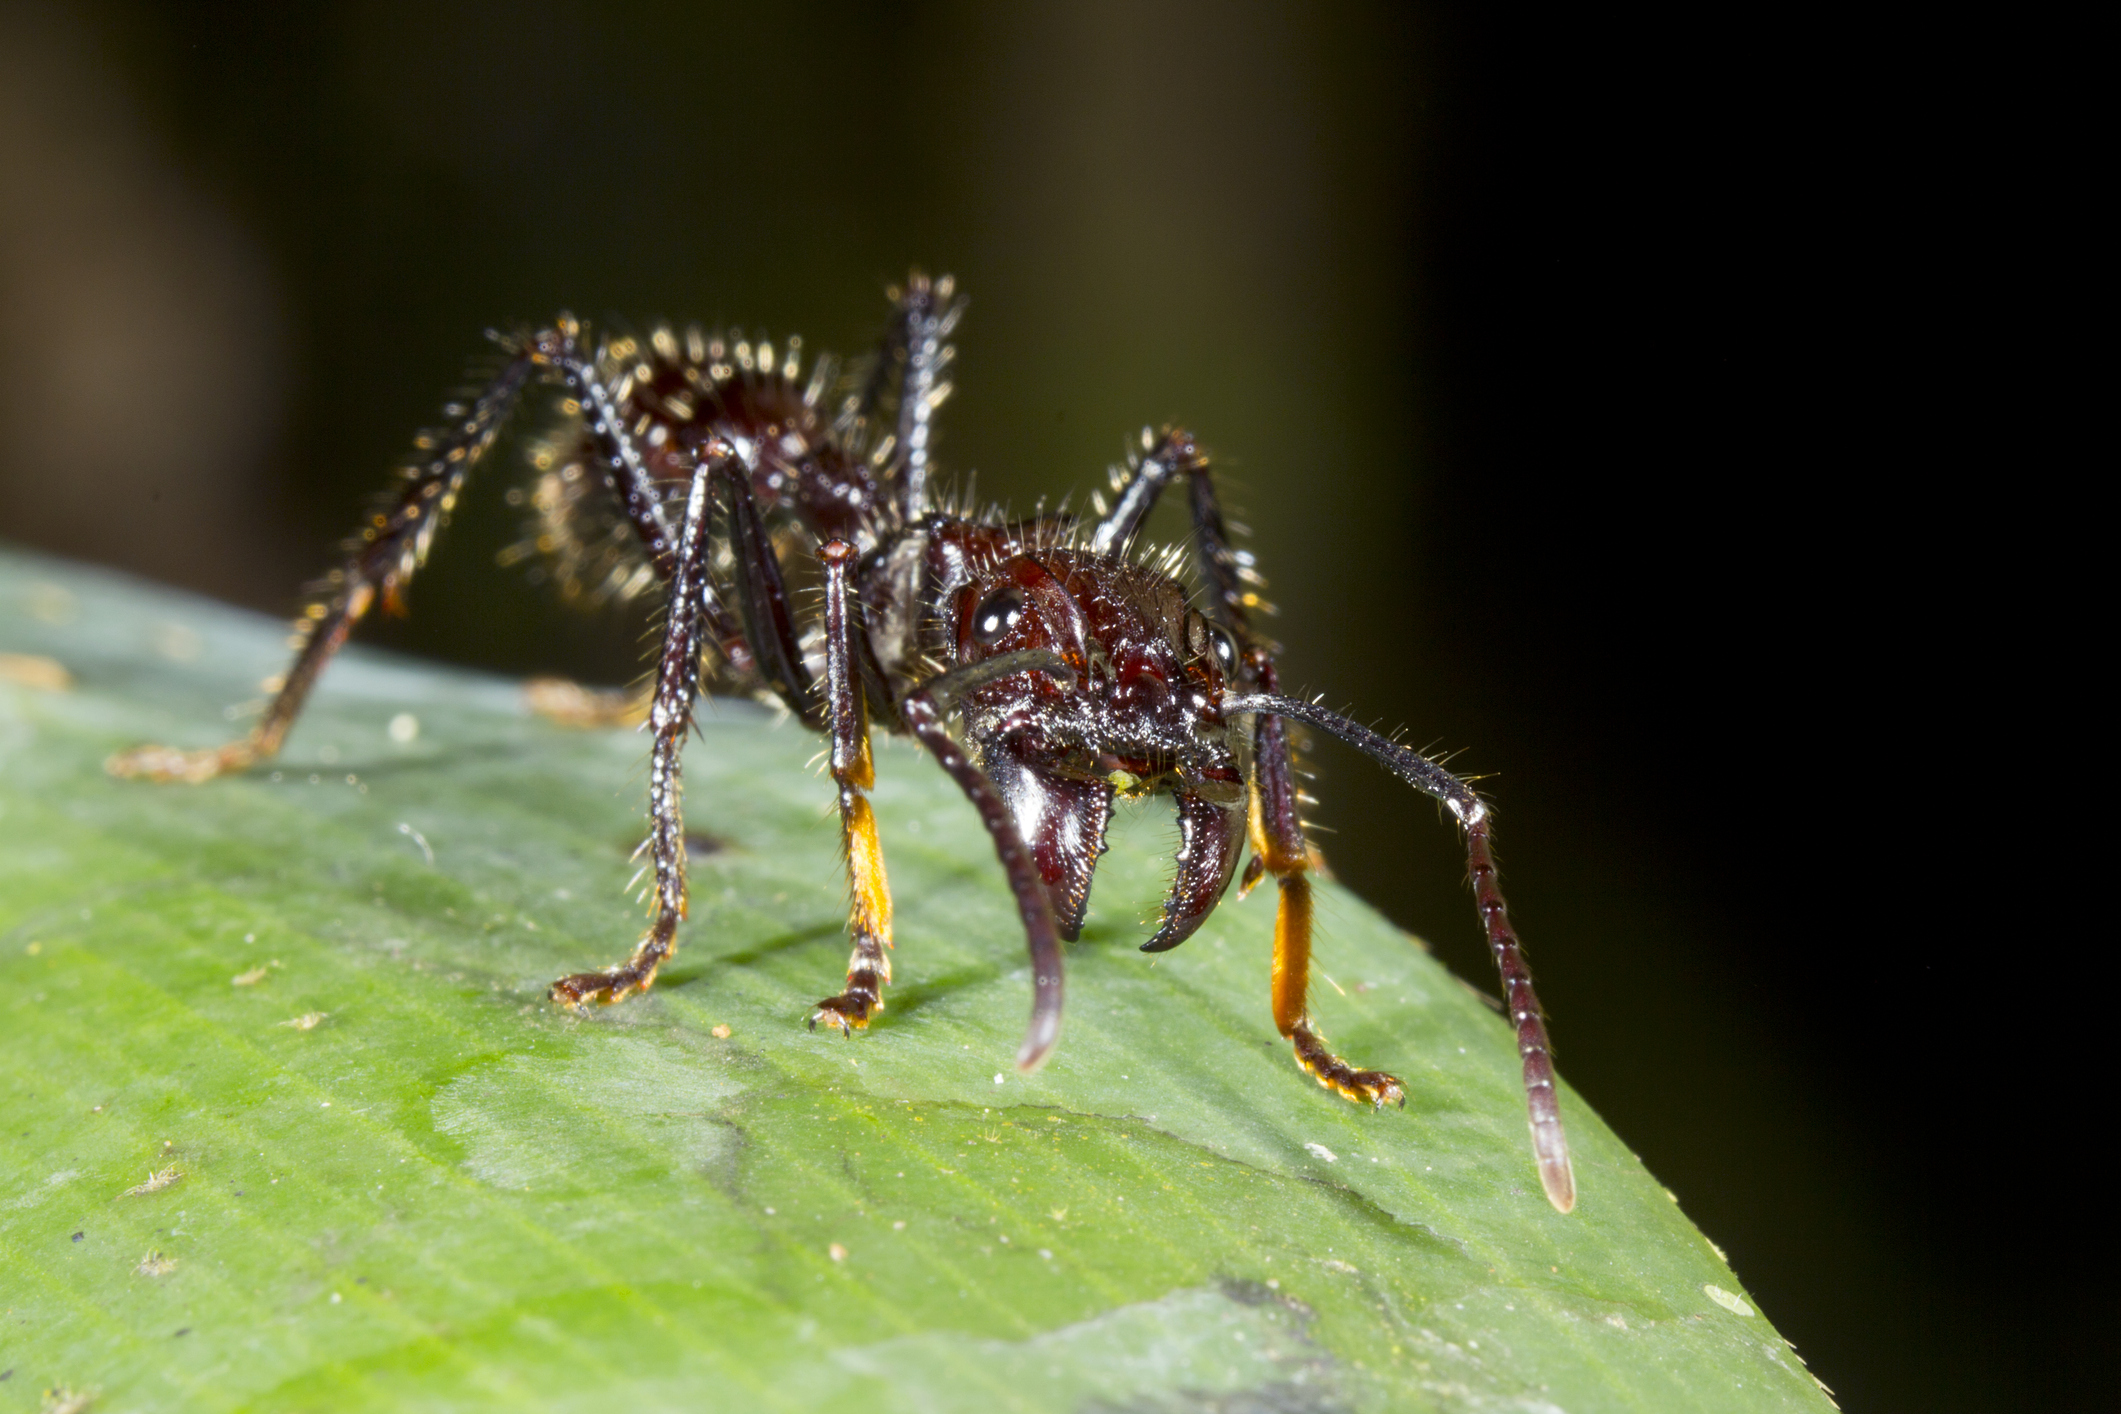 La fourmi Paraponera a la piqûre la plus douloureuse selon l'échelle de Schmidt.